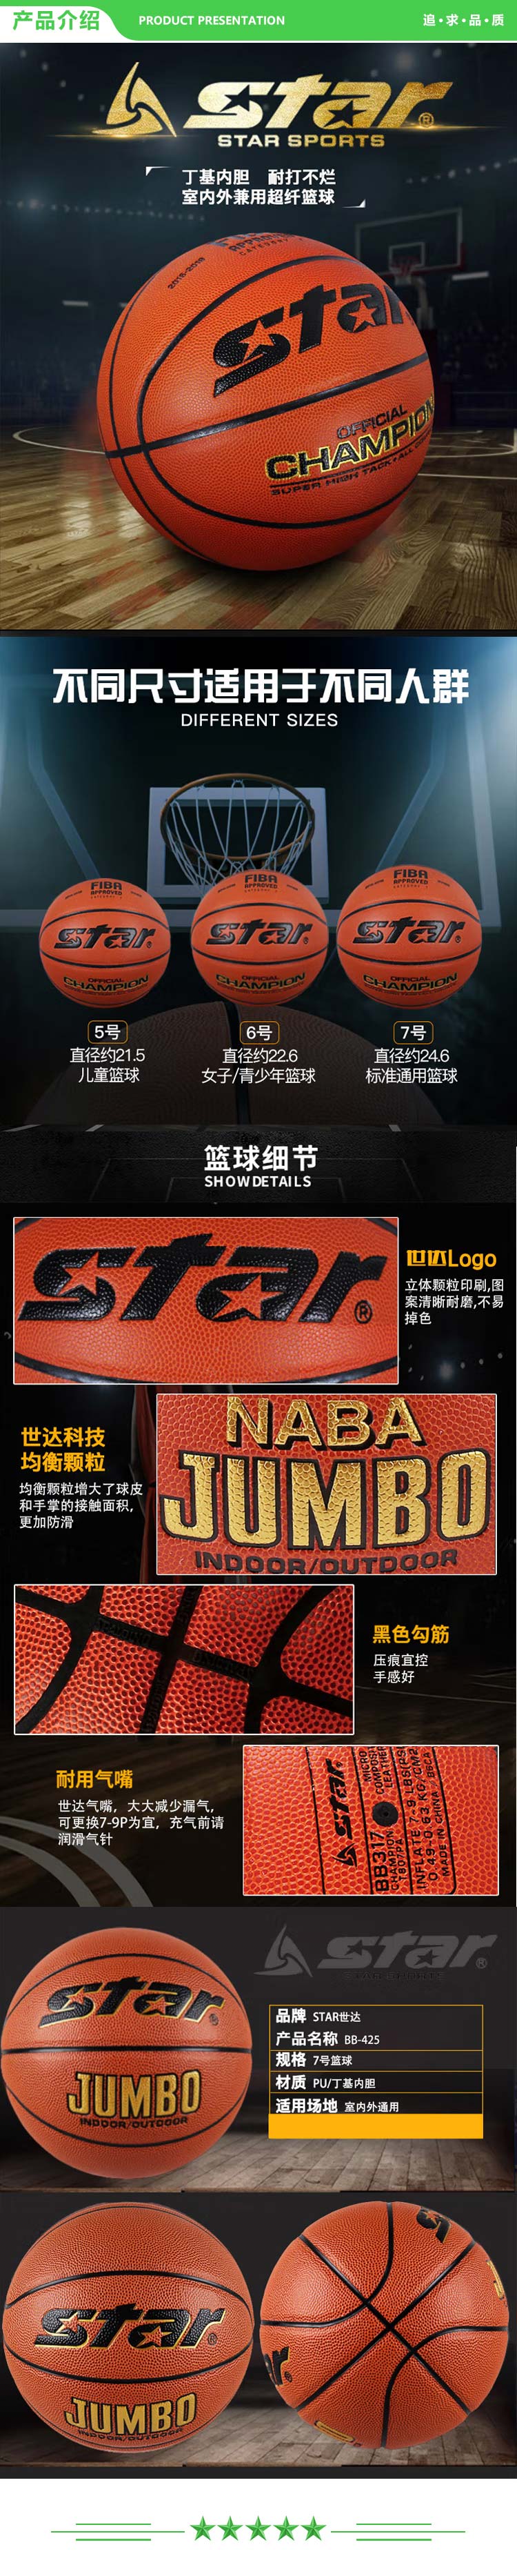 世达 star BB425 篮球5号  PU合成皮革 训练比赛室内外兼备篮球.jpg